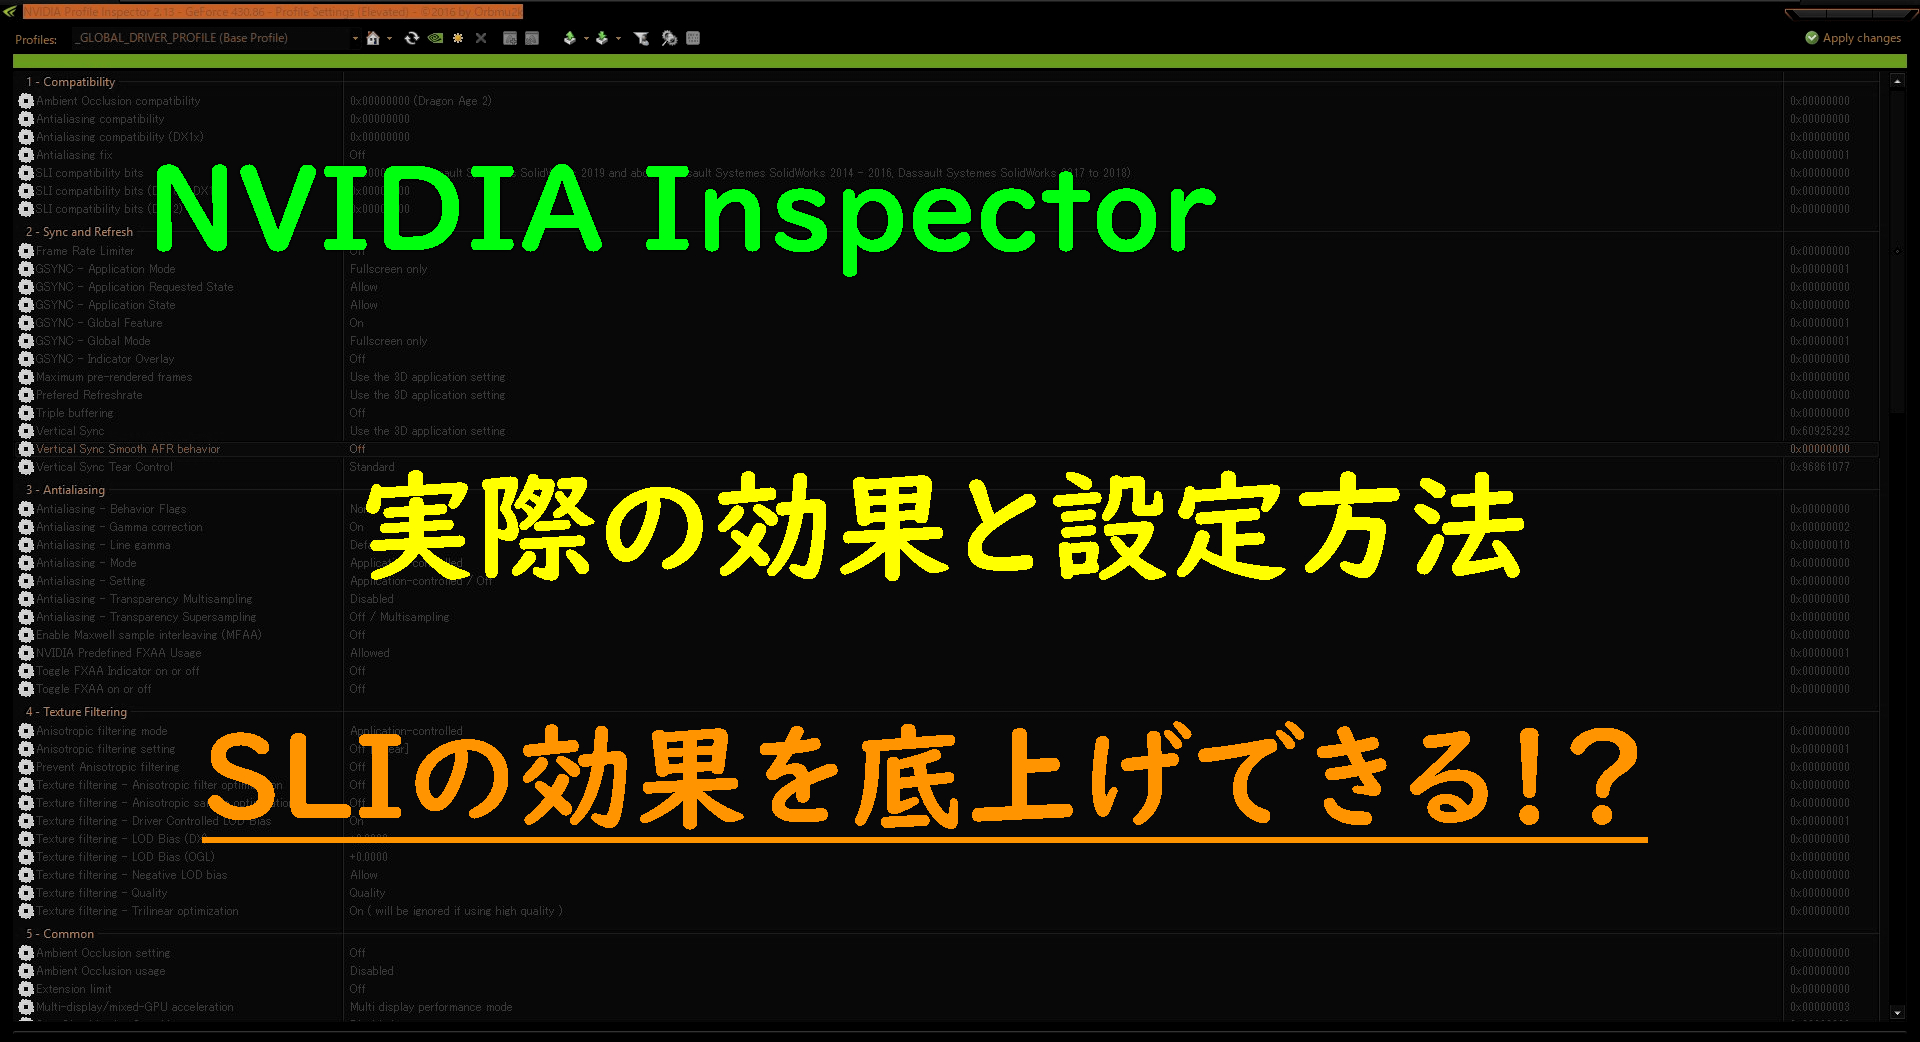 Sliの効果を底上げする Nvidia Inspector の効果と設定方法 フォクgamer